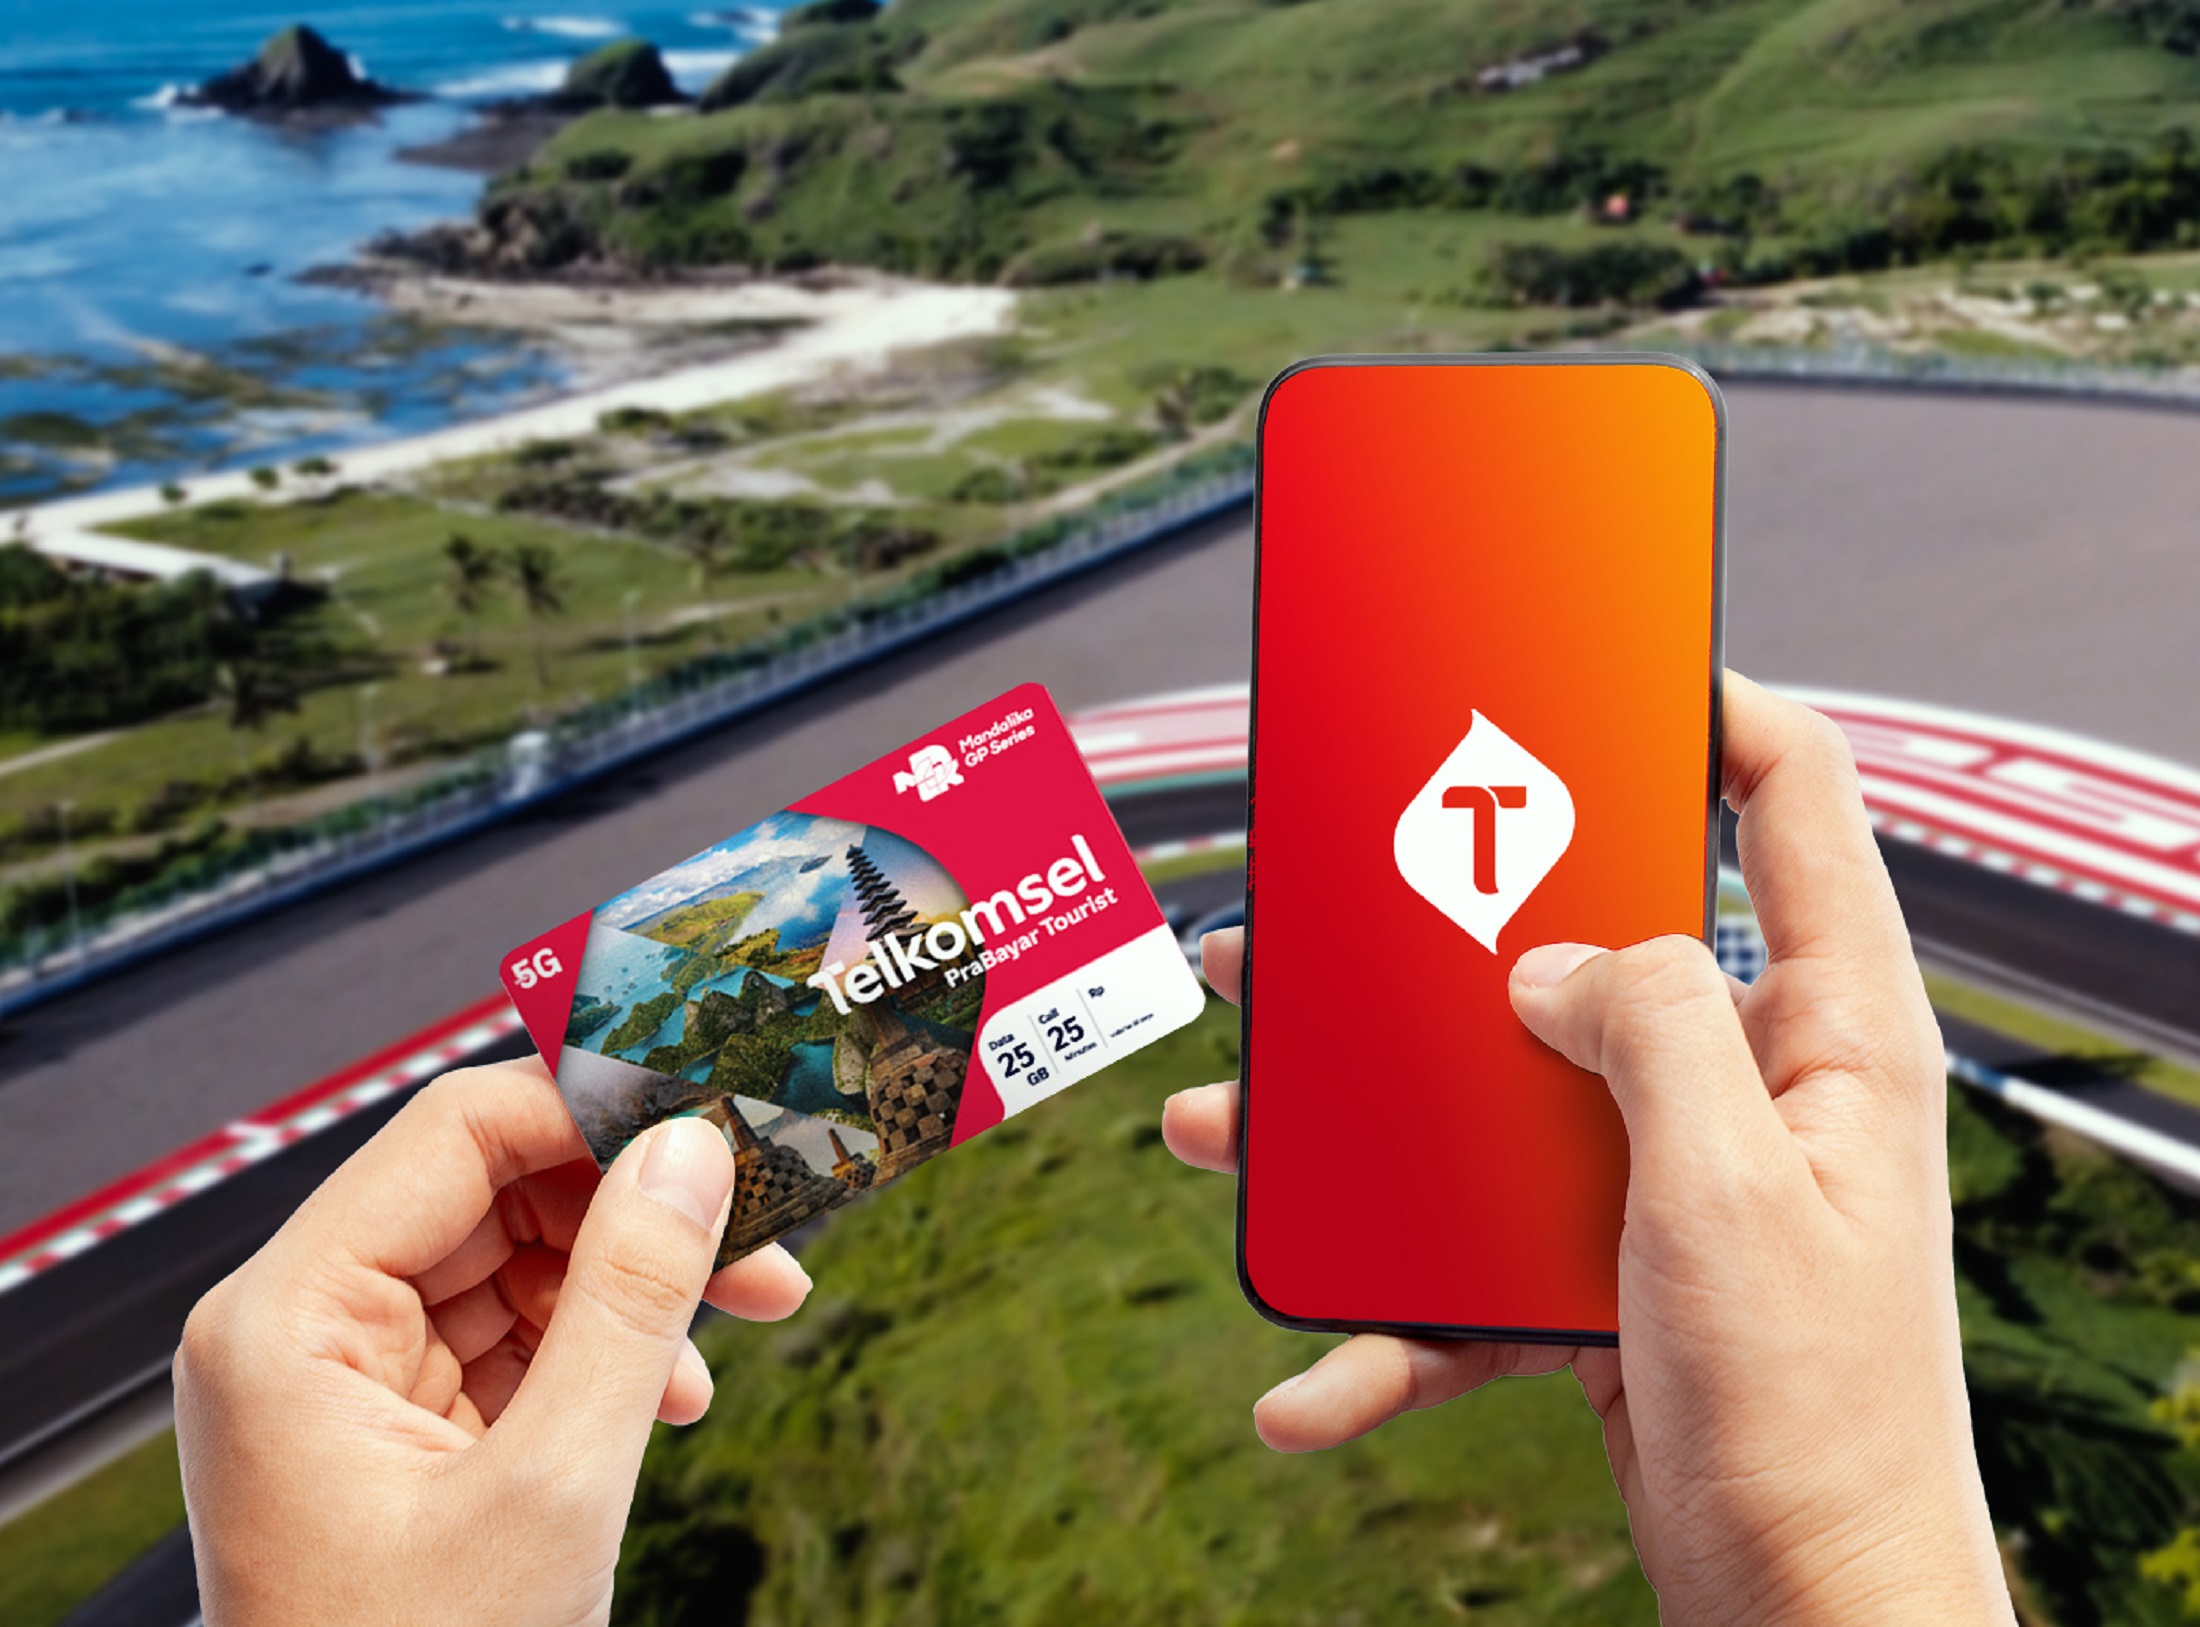 Telkomsel meluncurkan kartu perdana “Telkomsel Prabayar Tourist” dengan 25 GB kuota data, 25 menit kuota telepon, dan 25 menit kuota telepon internasional (IDD Call) yang dihadirkan khusus untuk wisatawan mancanegara menikmati aktivitas digital terbaik se